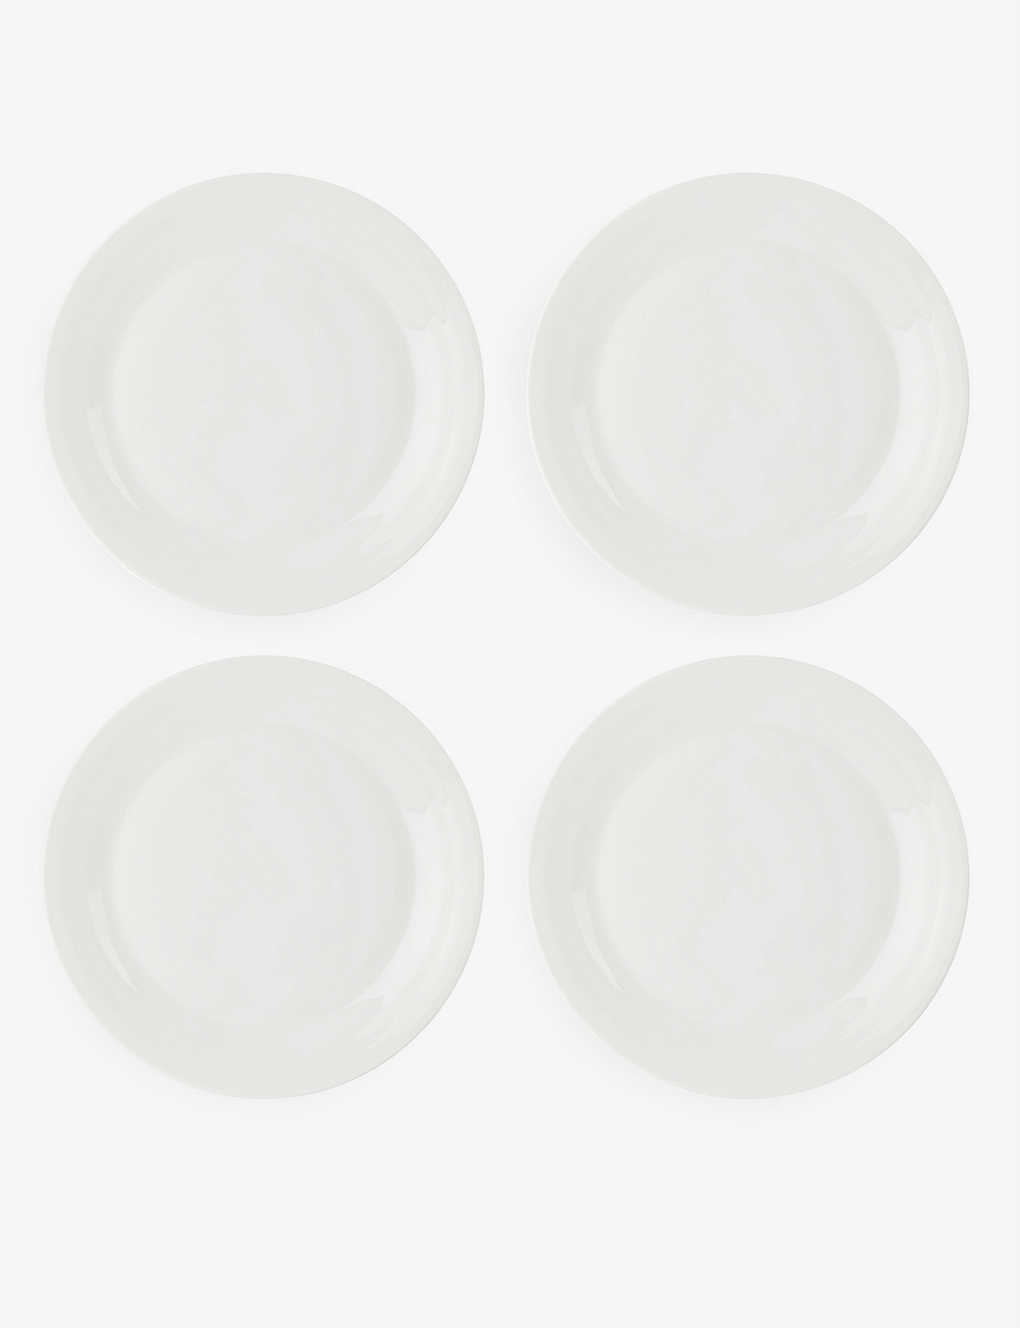 Royal Doulton 1815 Pure Porcelain Plates Set Of Four